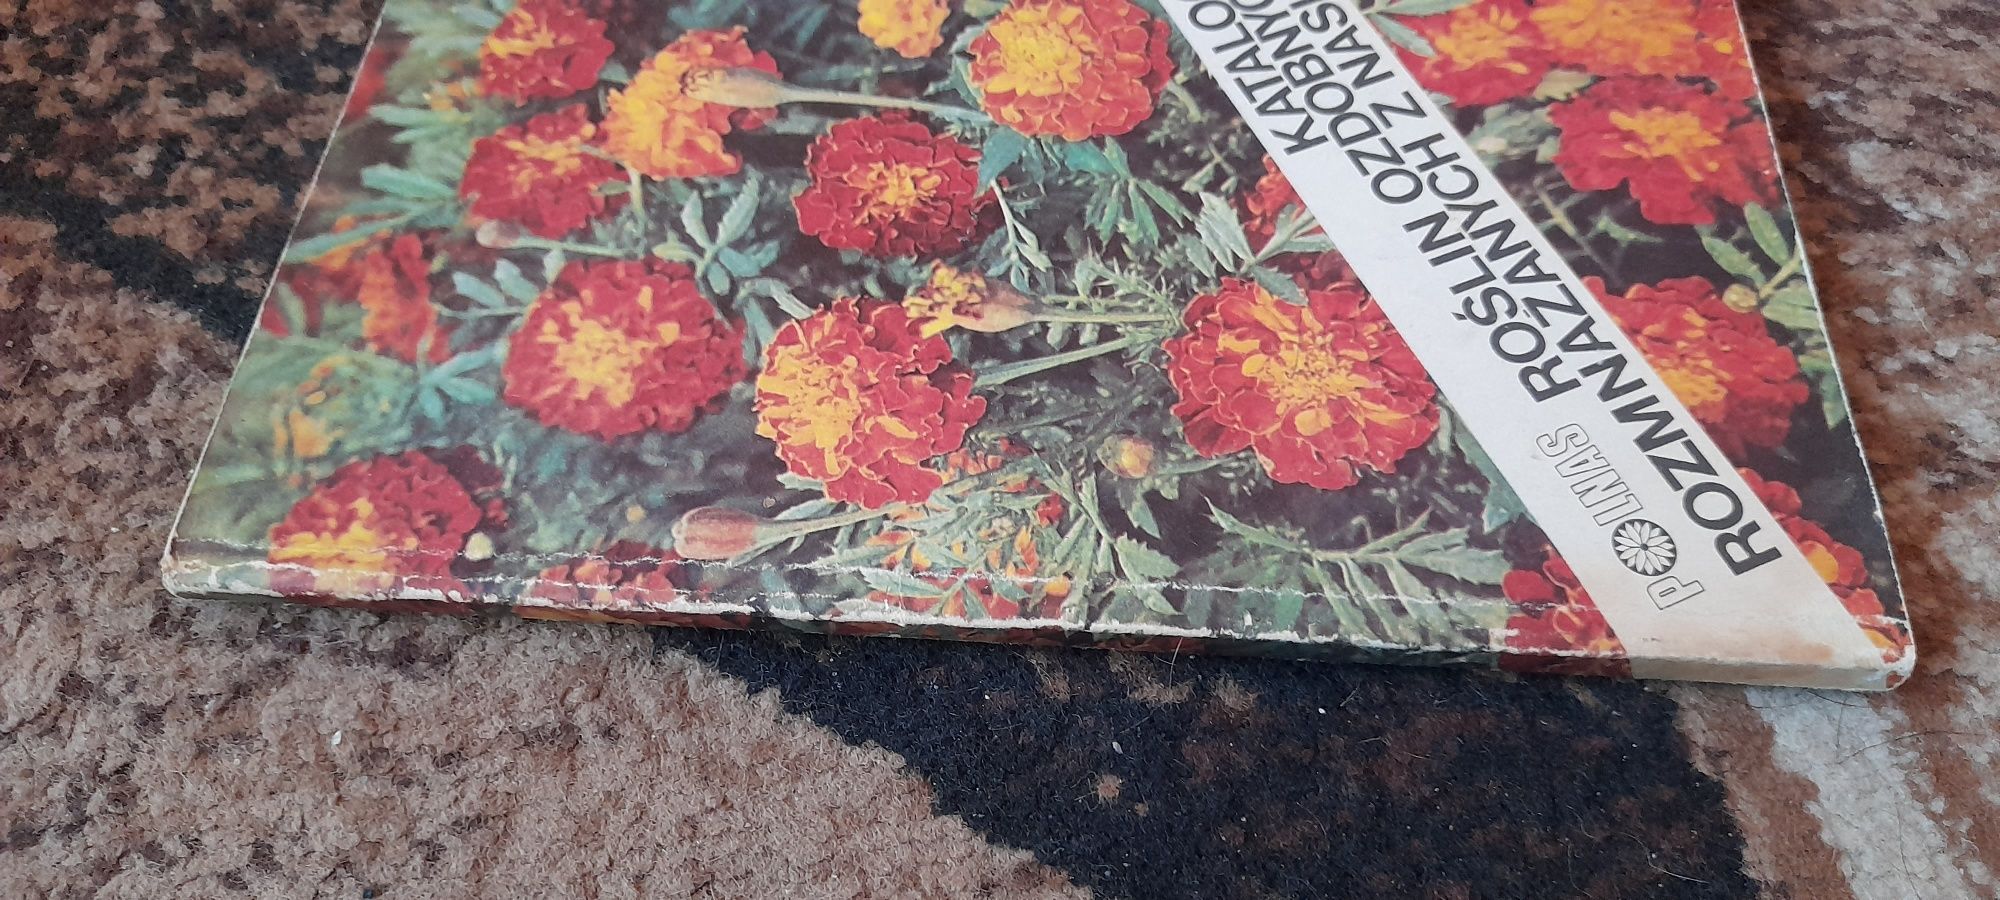 Katalog roślin ozdobnych rozmnażanych z nasion - I.Chwedoruk 1985